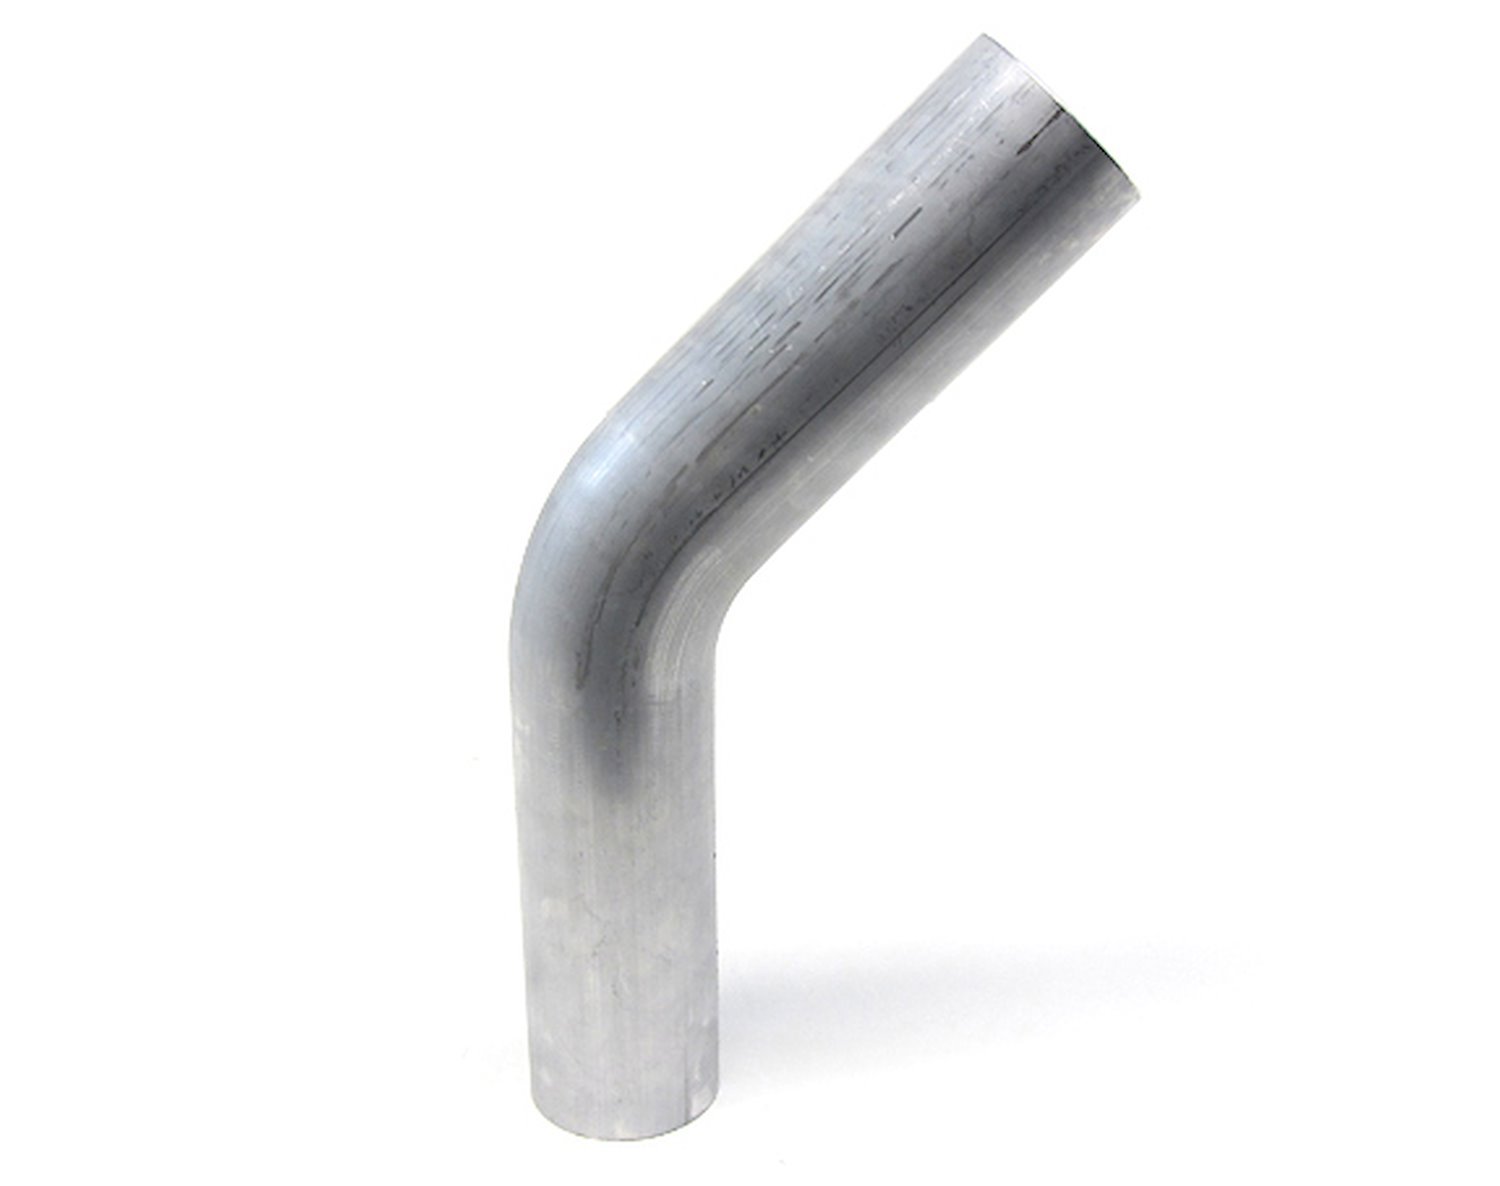 AT45-225-CLR-3 Aluminum Elbow Tube, 6061 Aluminum, 45-Degree Bend Elbow Tubing, 2-1/4 in. OD, Large Radius, 3 in. CLR